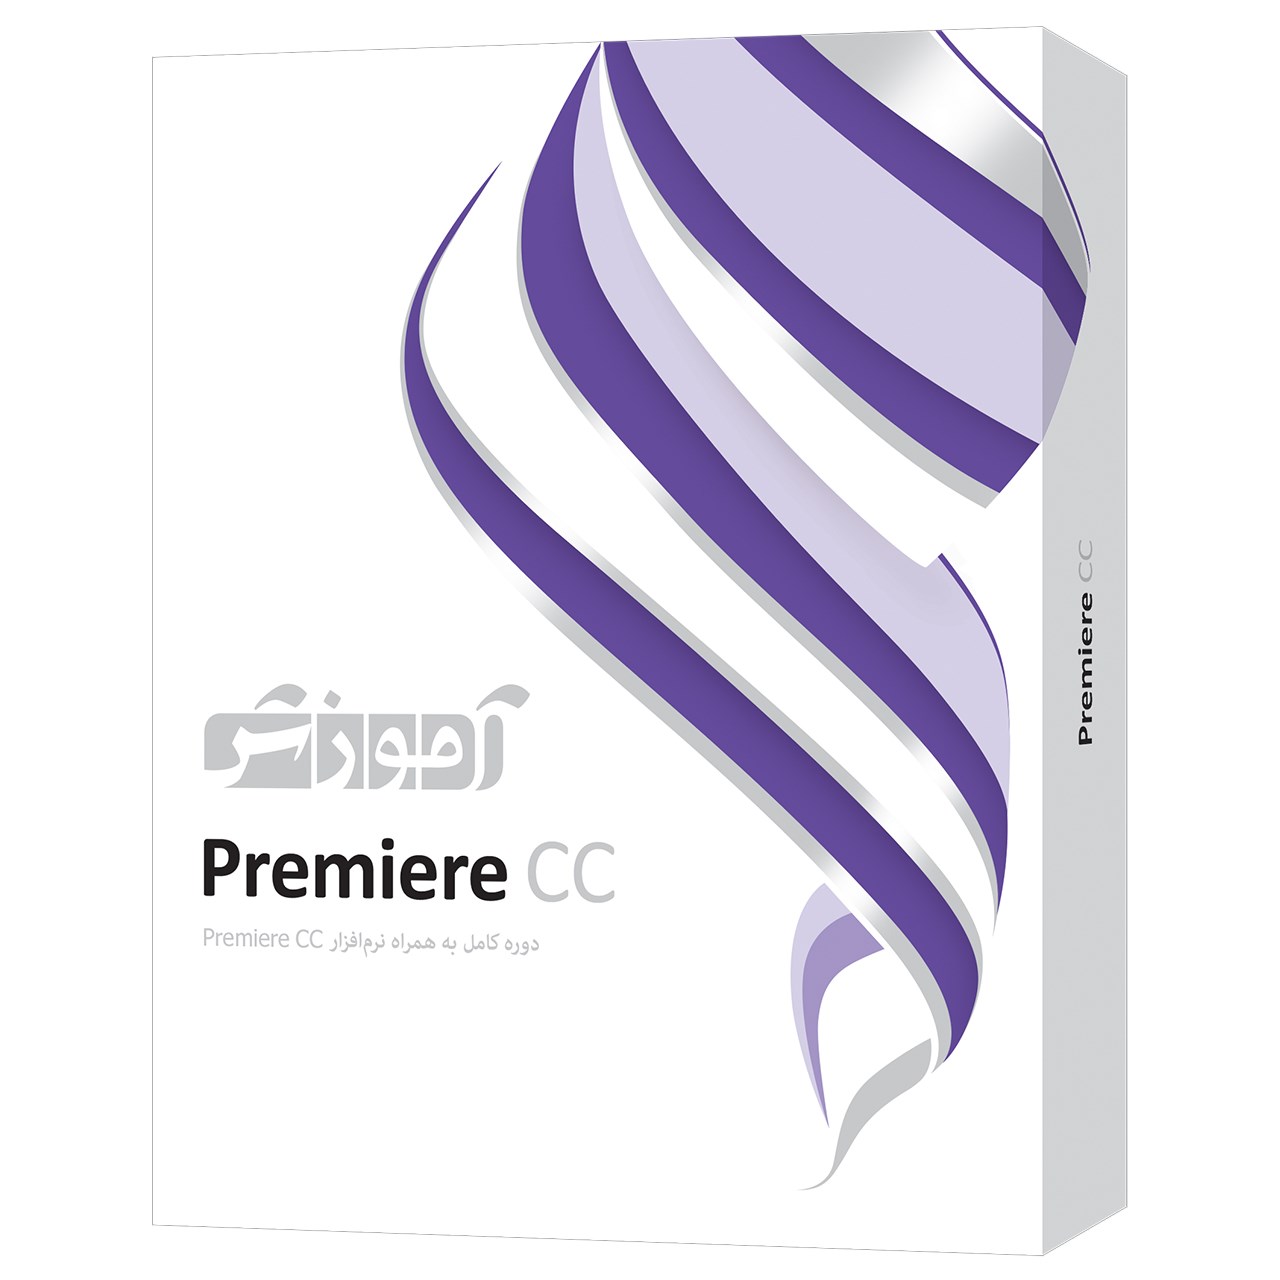 خرید اینترنتی                     نرم افزار آموزش Adobe Premier CC شرکت پرند